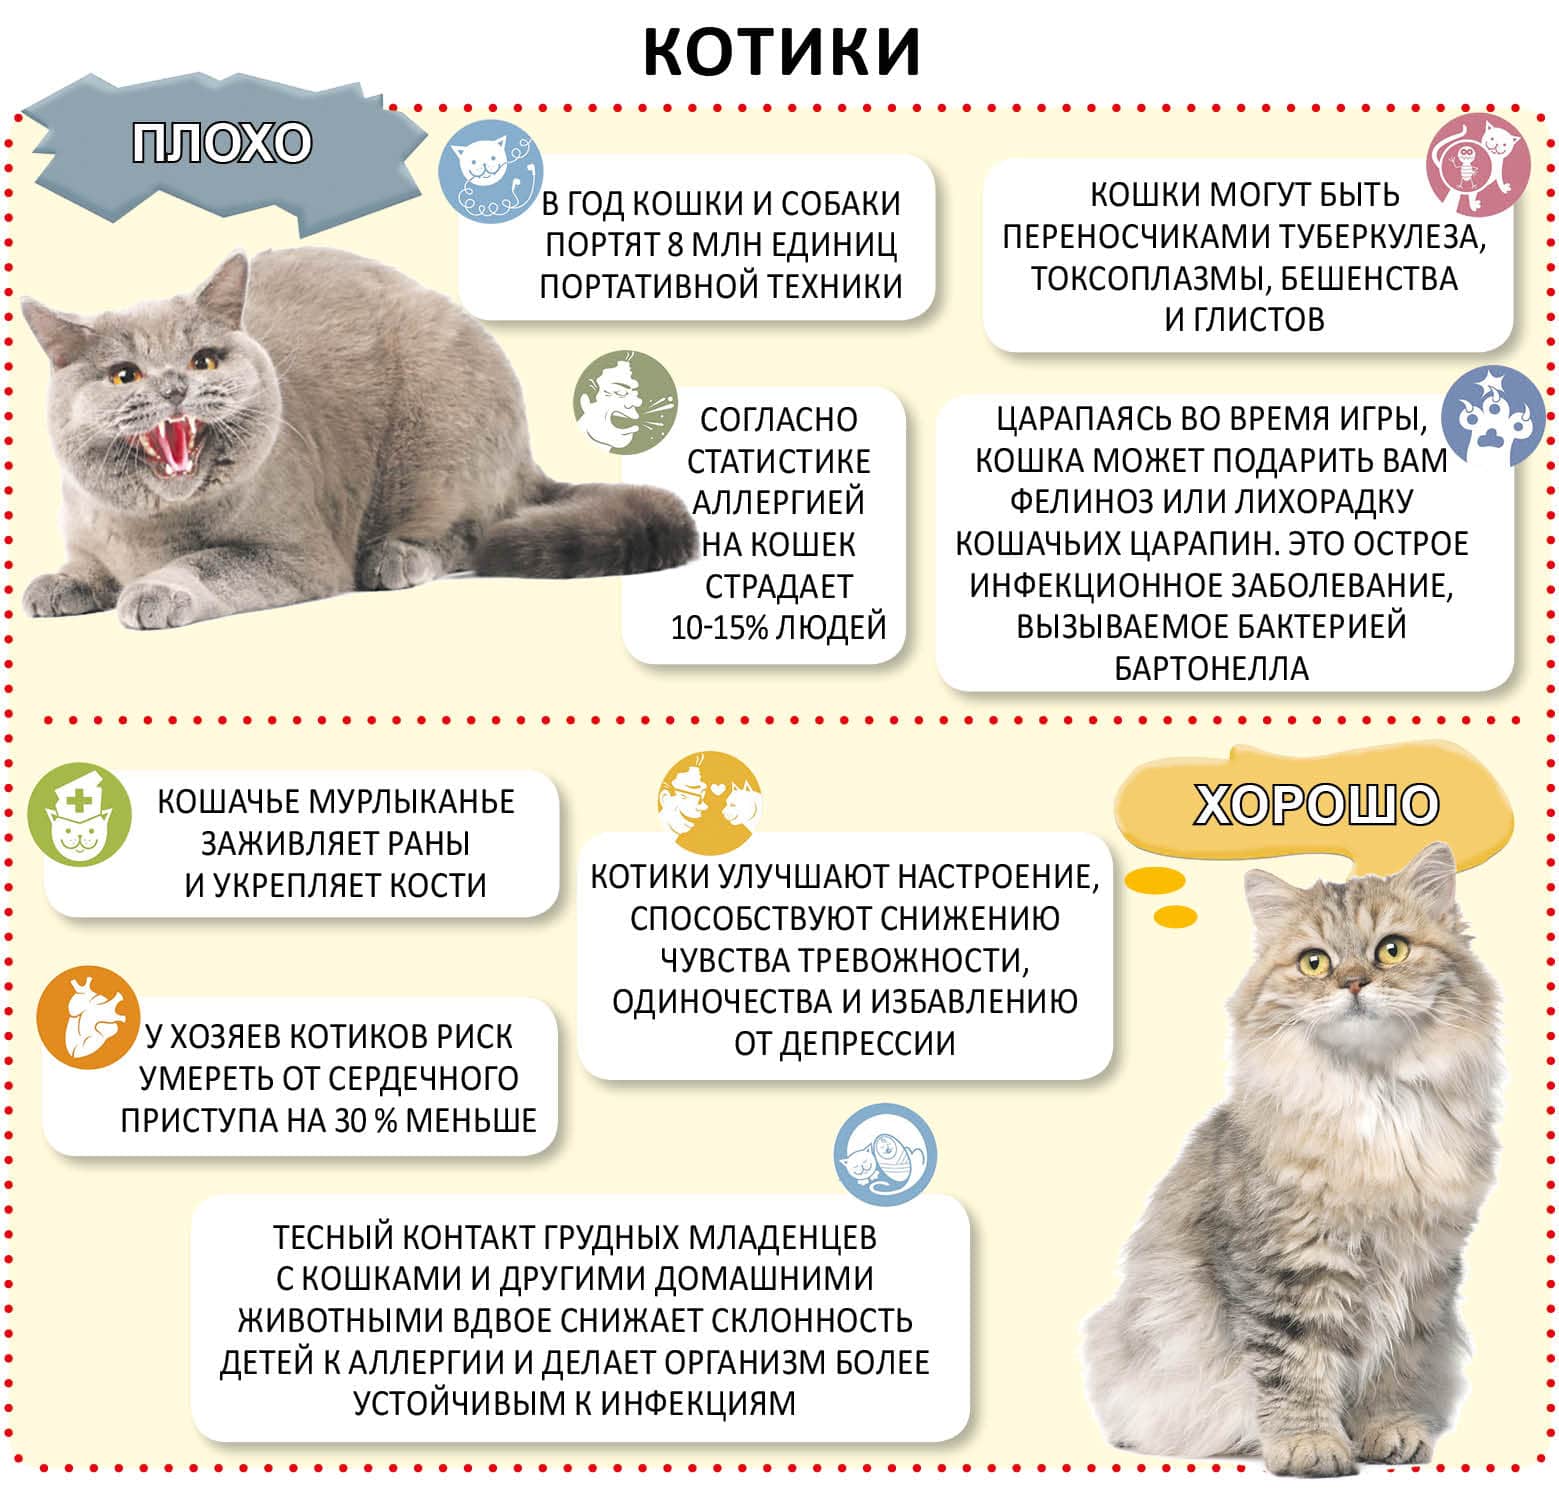 Из-за чего бывает рвота у кошки: виды, симптомы, лечение в клинике и дома, первая помощь и профилактика